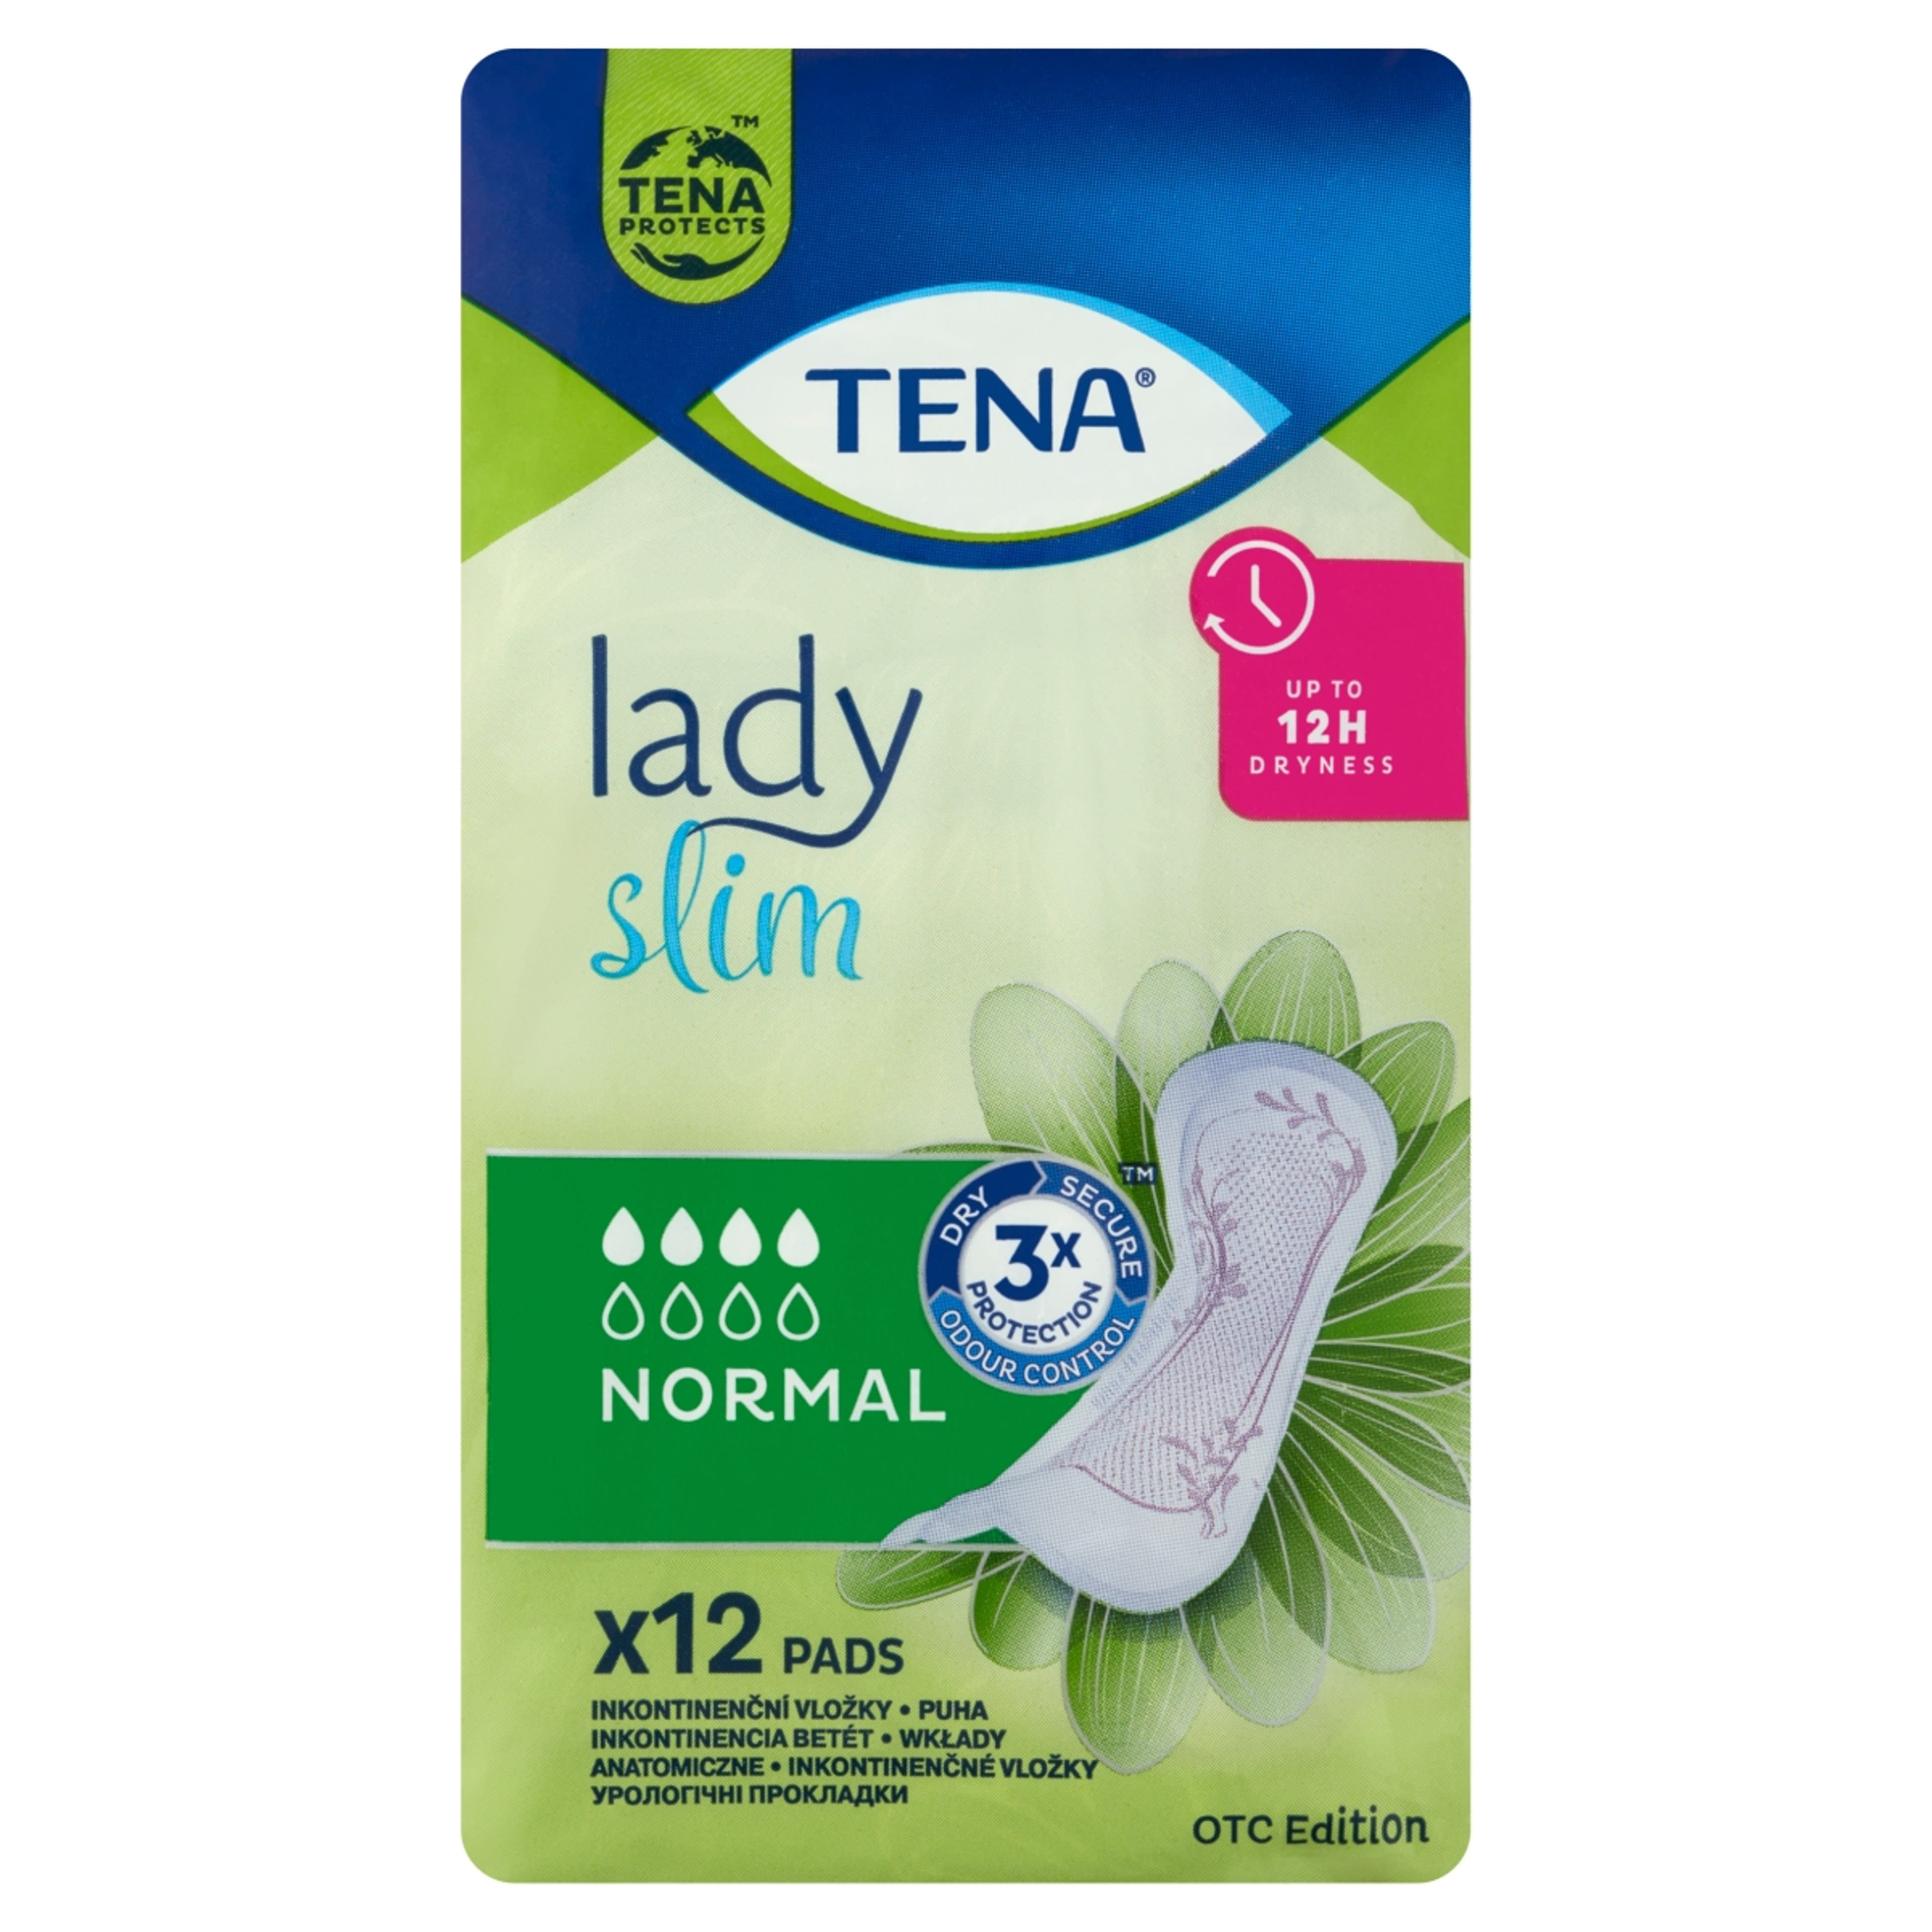 Tena lady slim normál inkontinencia betét - 12 db-1